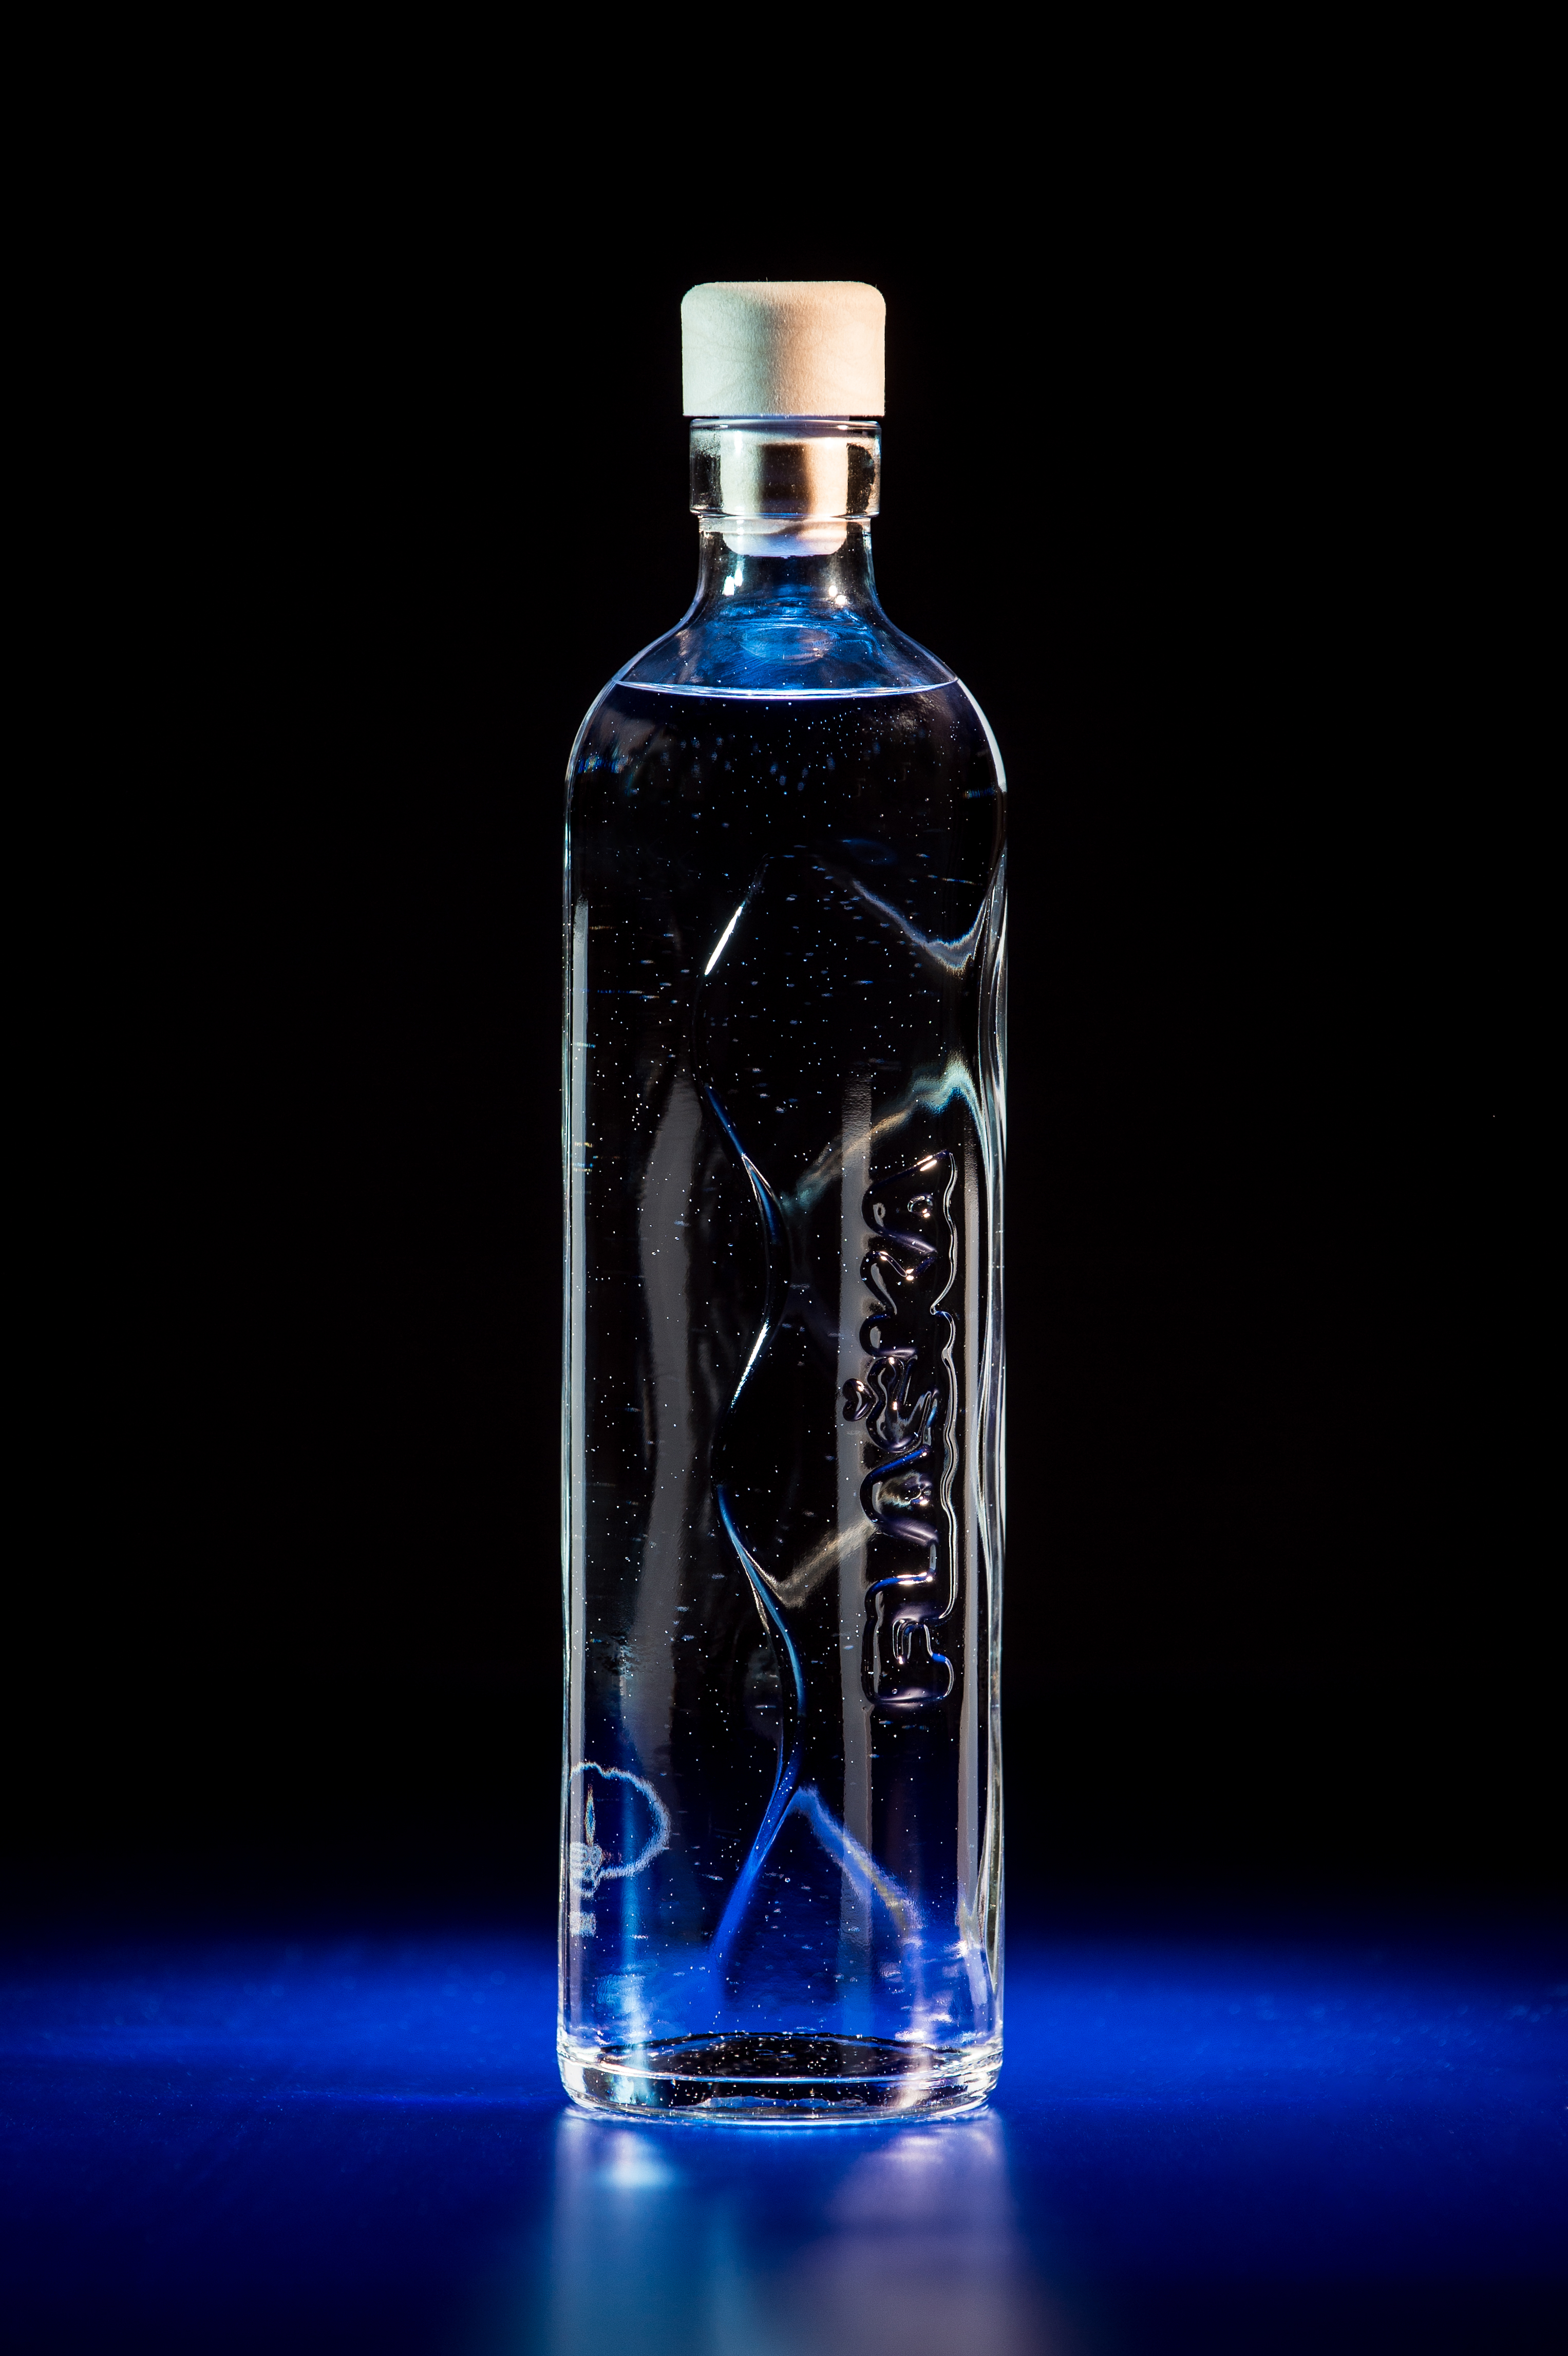 Flaška bottle. True bottle, made from glass